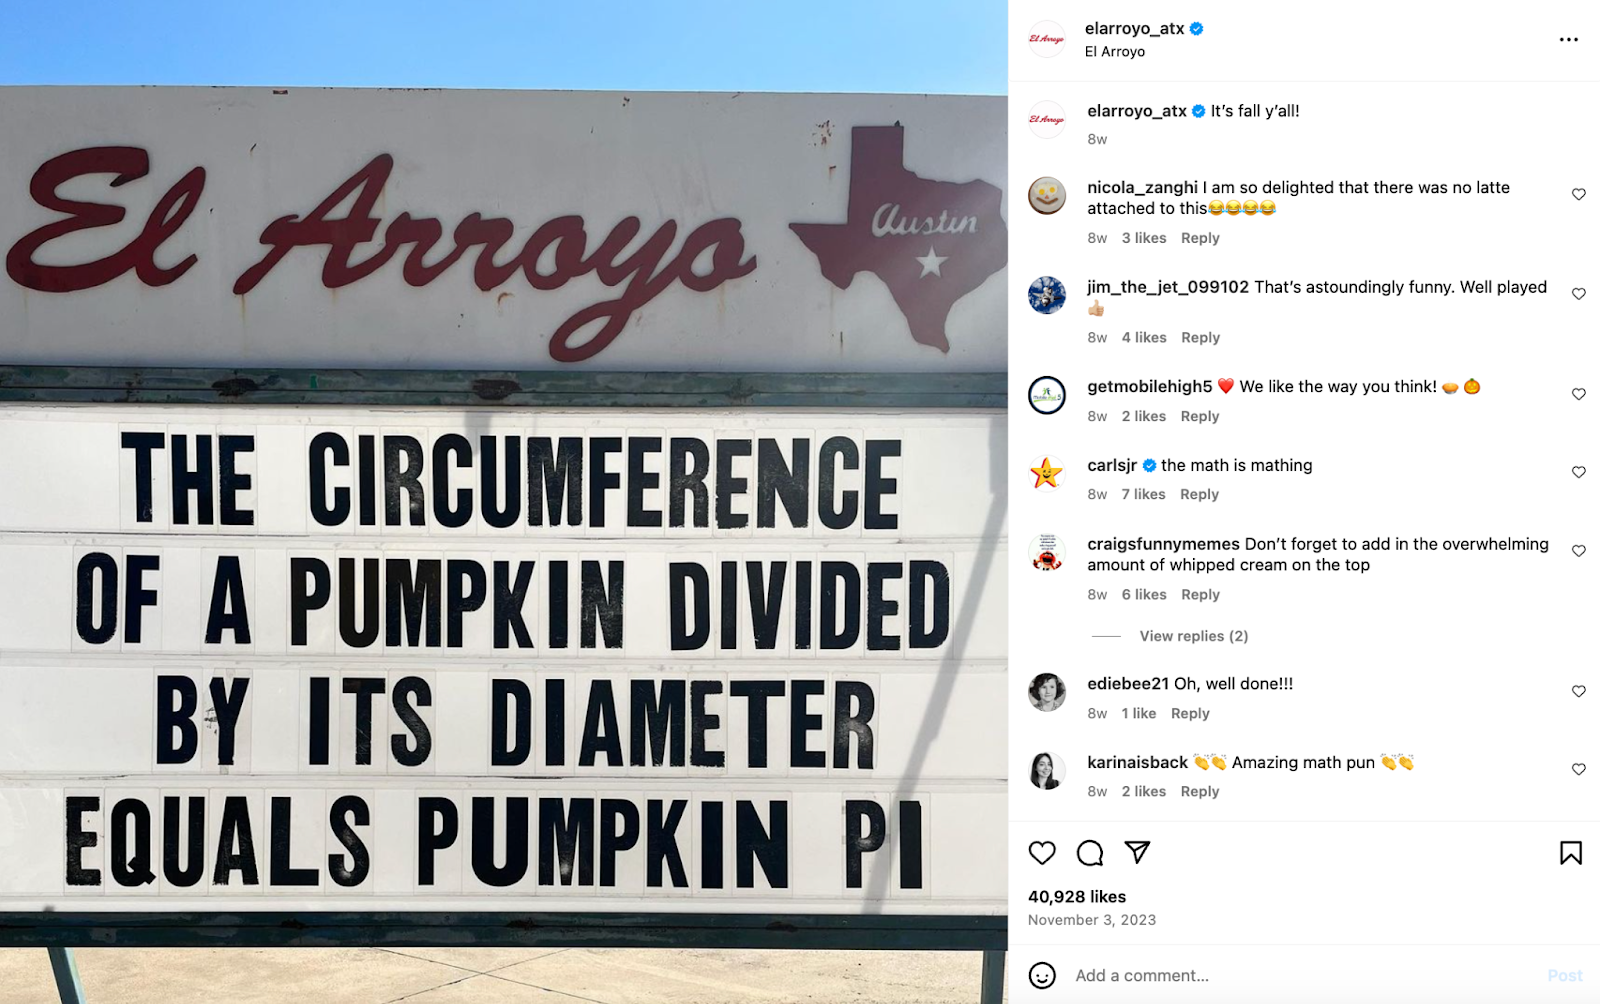 Idées créatives de marketing pour les restaurants : le restaurant El Arroyo, basé à Austin, est célèbre pour son enseigne qui affiche des dictons et des blagues effrontées.